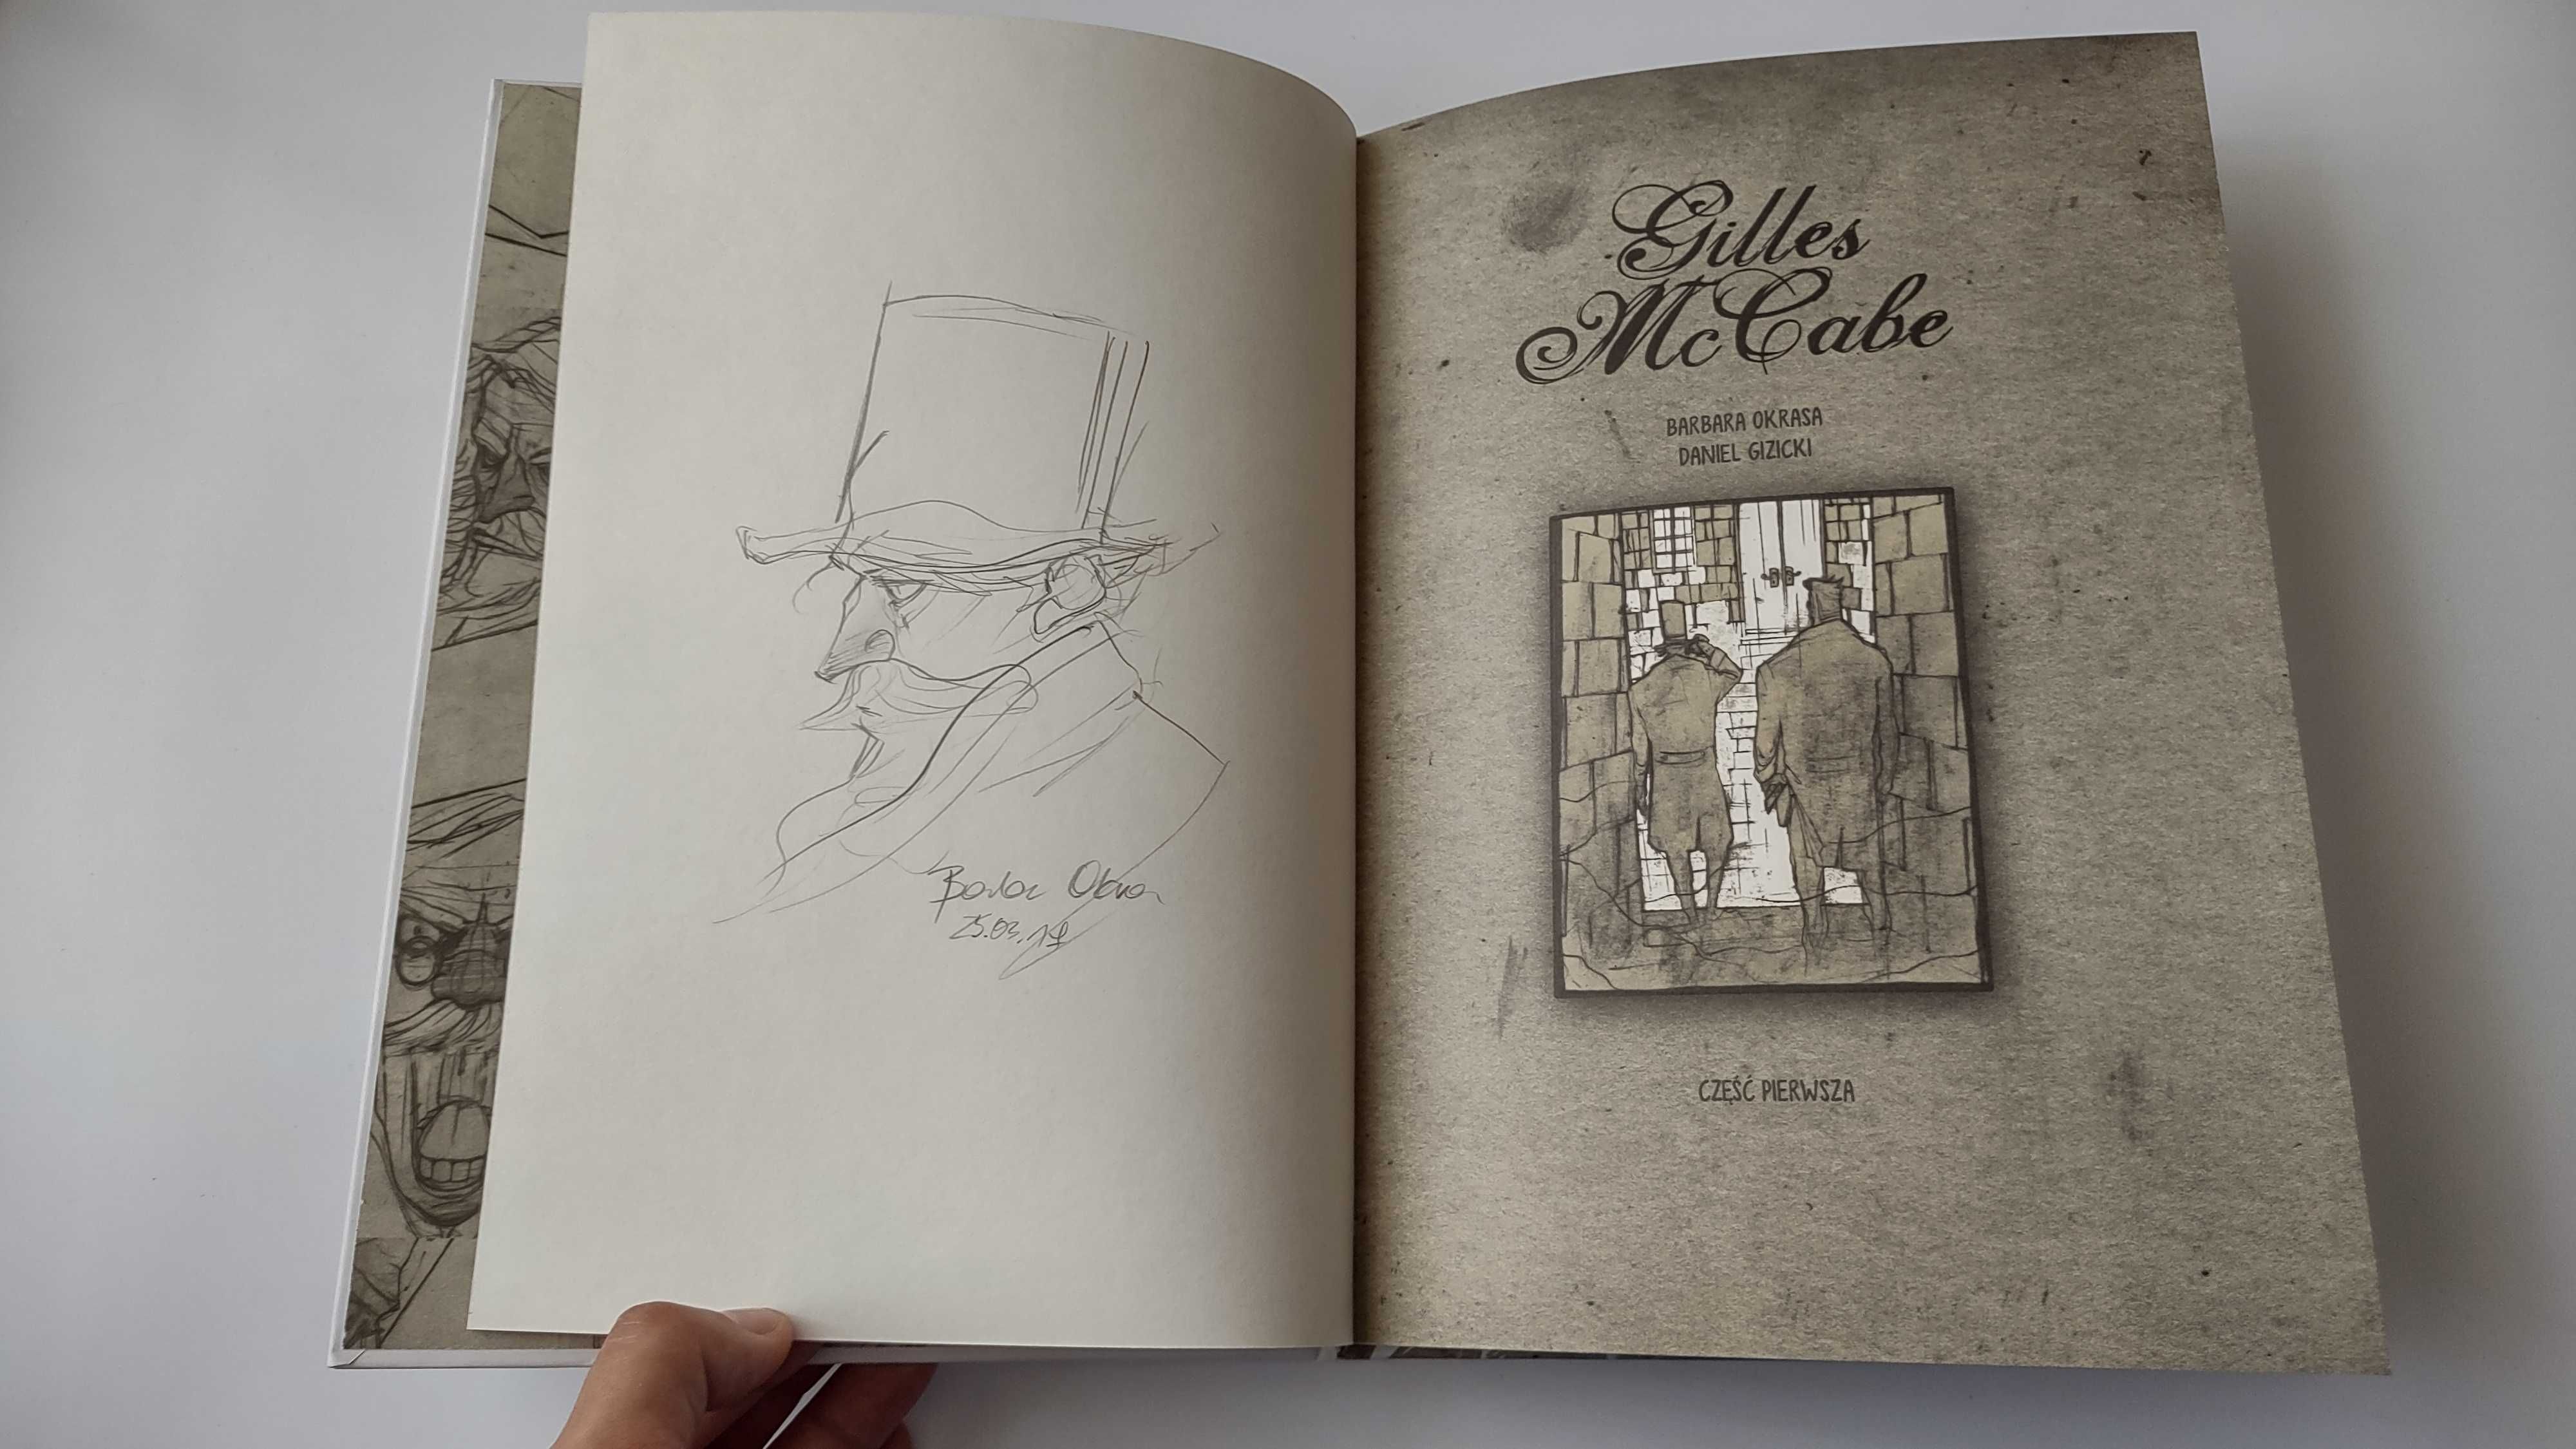 Gilles McCabe 1 autograf rysunek